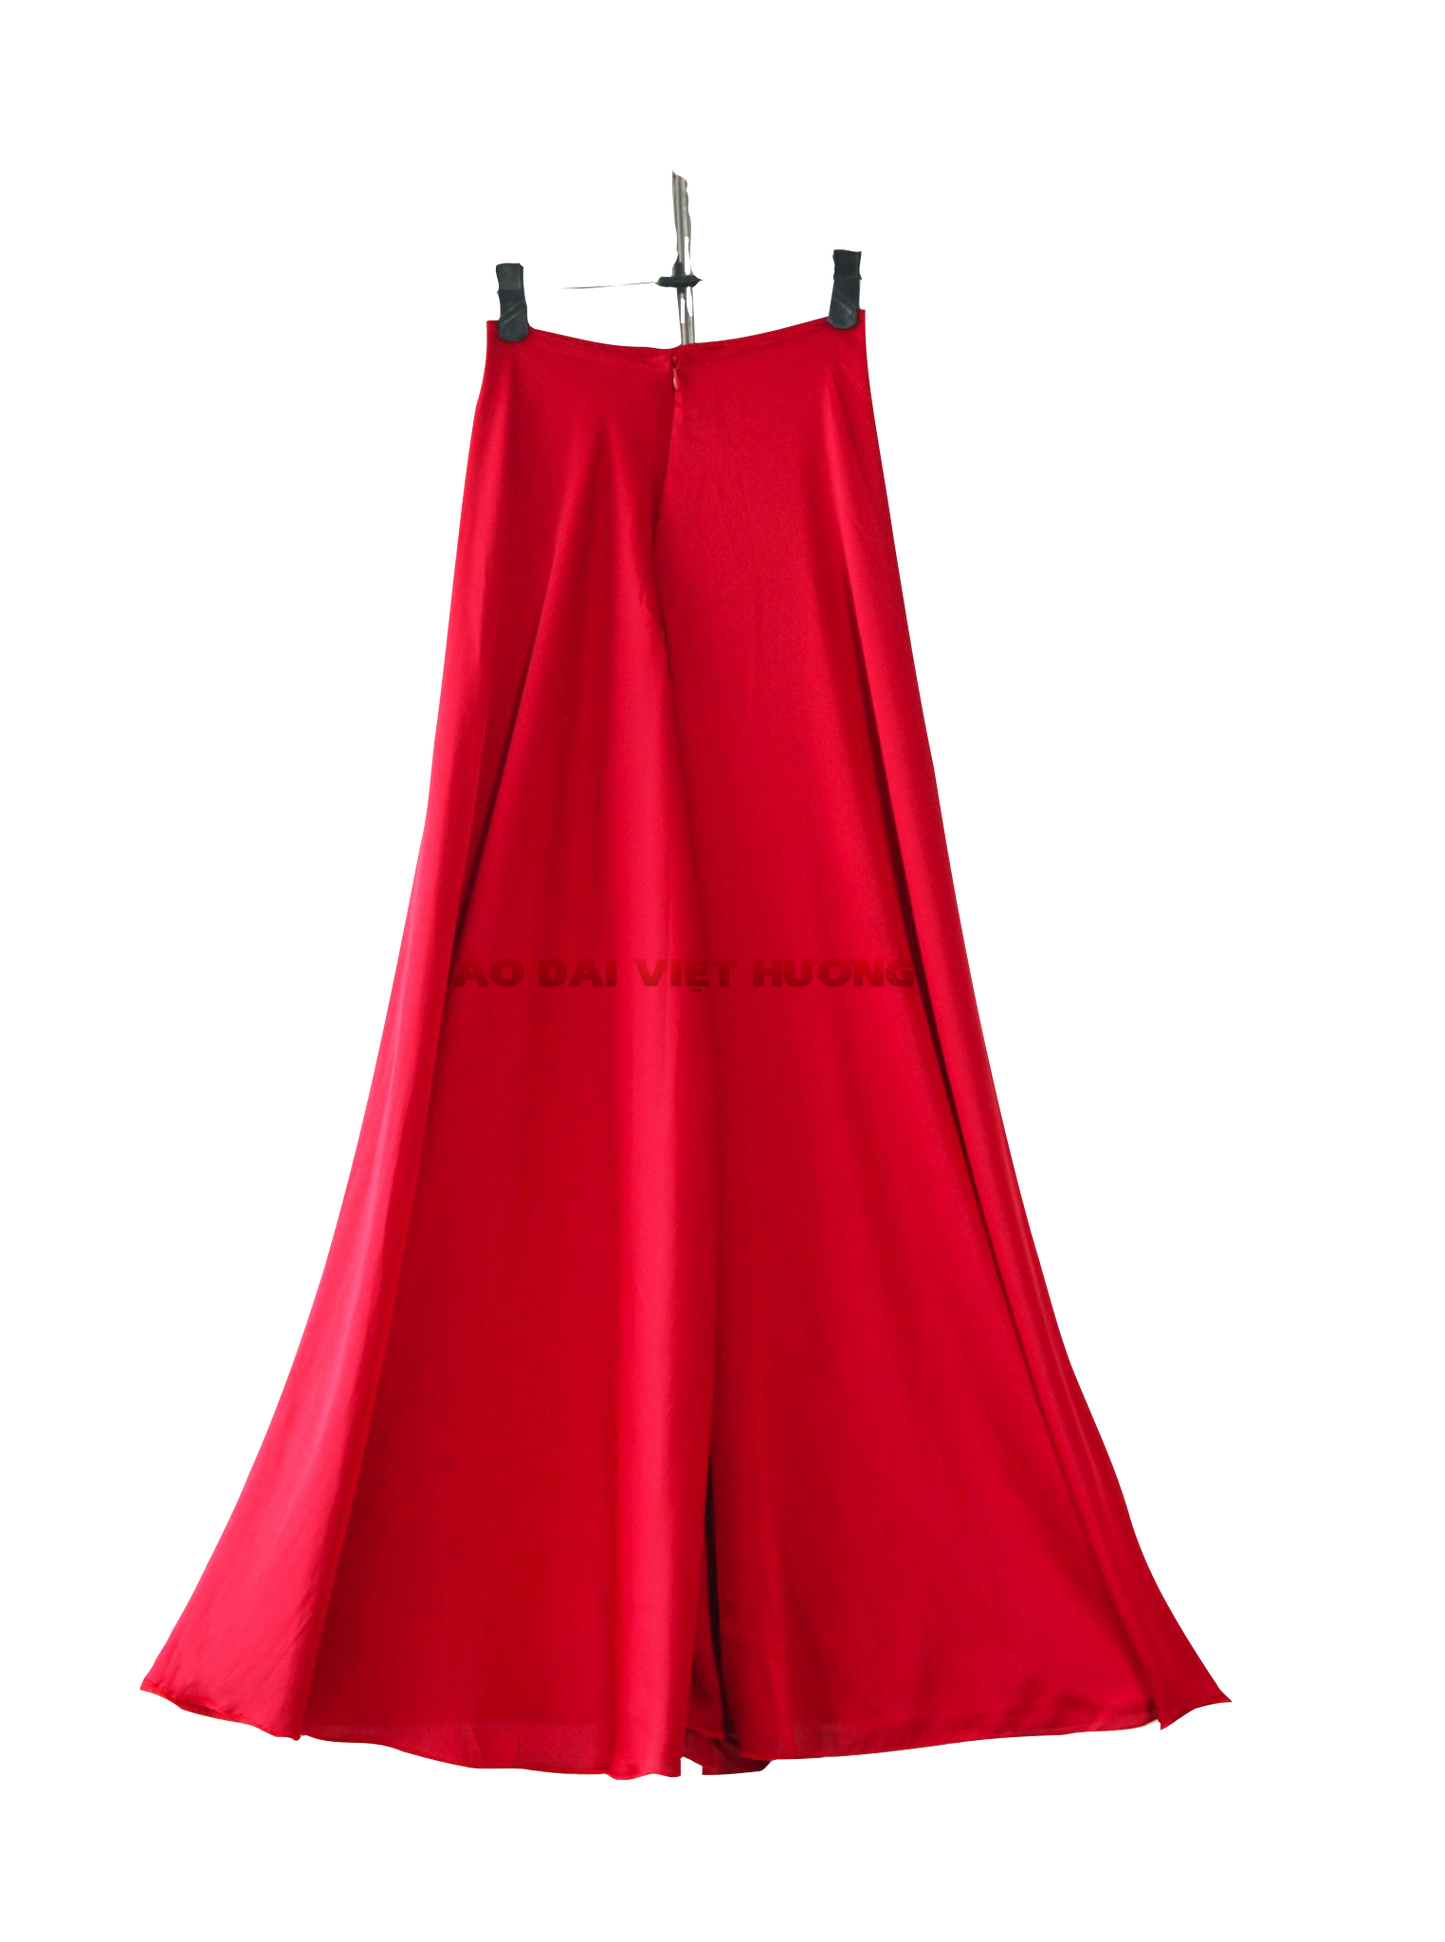 505 - Quần Váy Lụa Thái Tuấn Đỏ (Quần Váy Ống Xéo Lụa Thái Tuấn Đỏ)